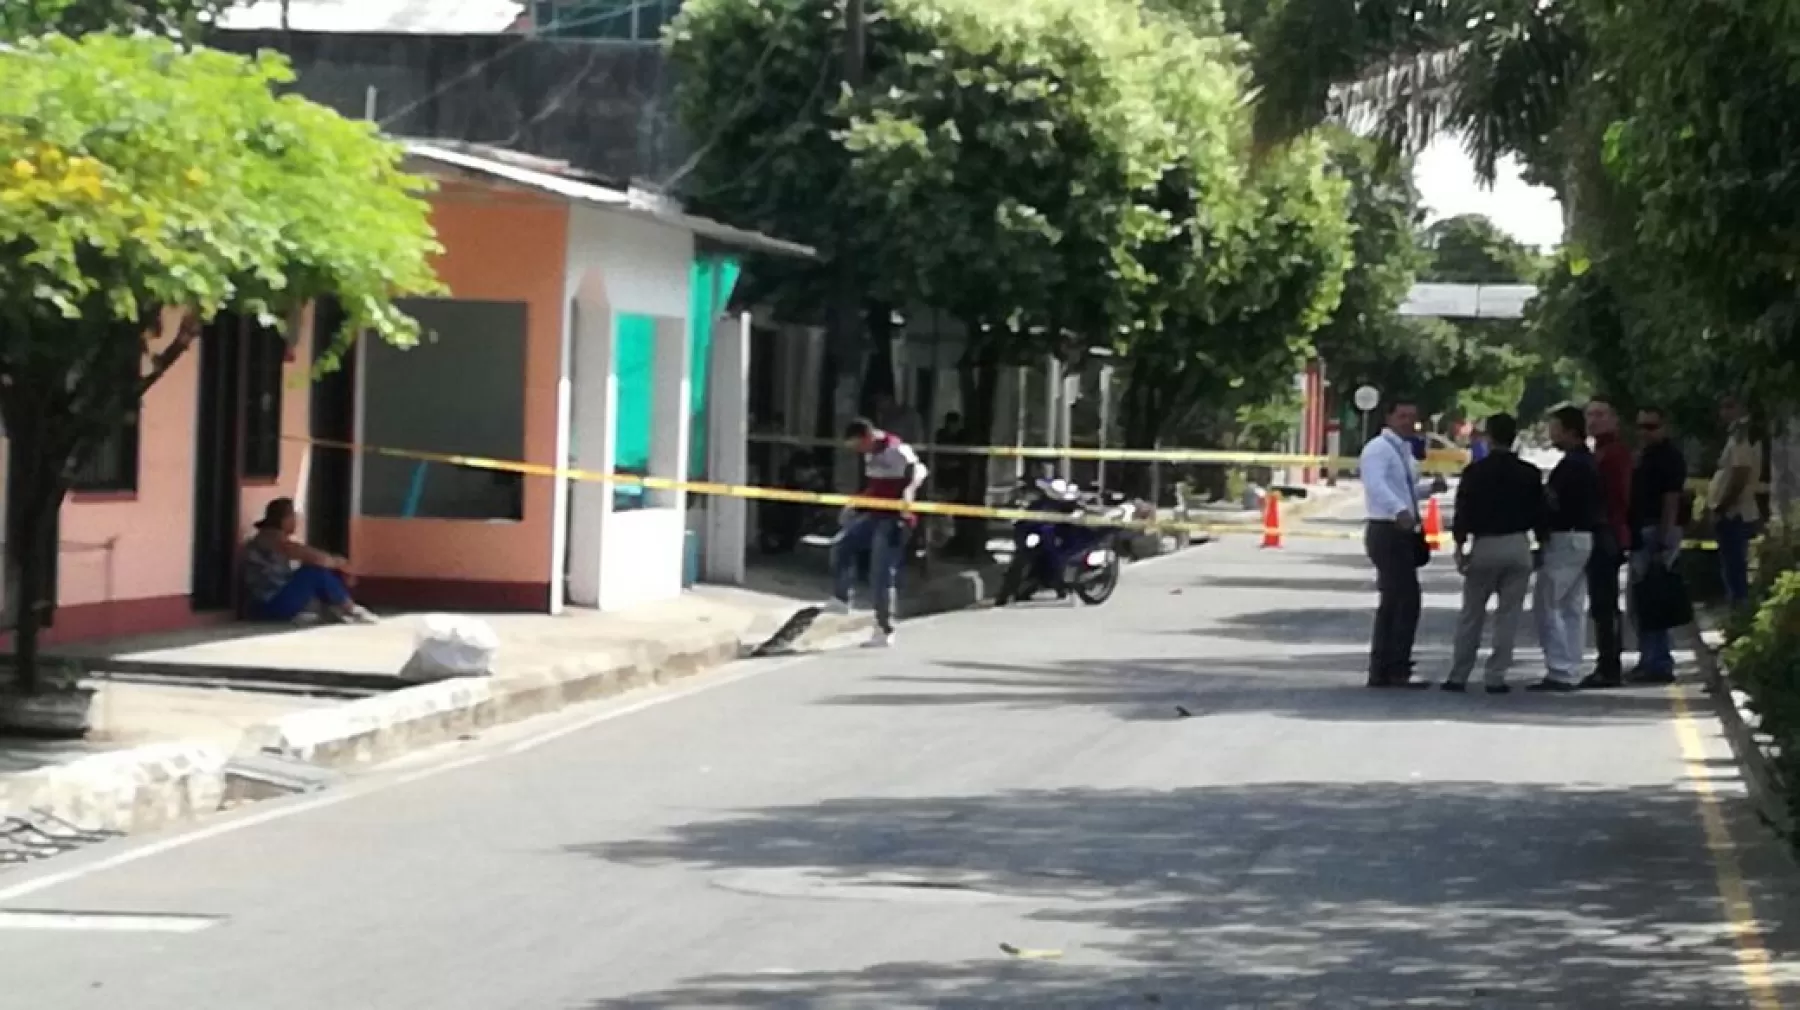 En este local desayunaba el intendente Jorge Sáenz, cuando unos desconocidos le dispararon en la cabeza. Un hombre -administrador del lugar- y una mujer resultaron heridos. Las autoridades buscan a los responsables.